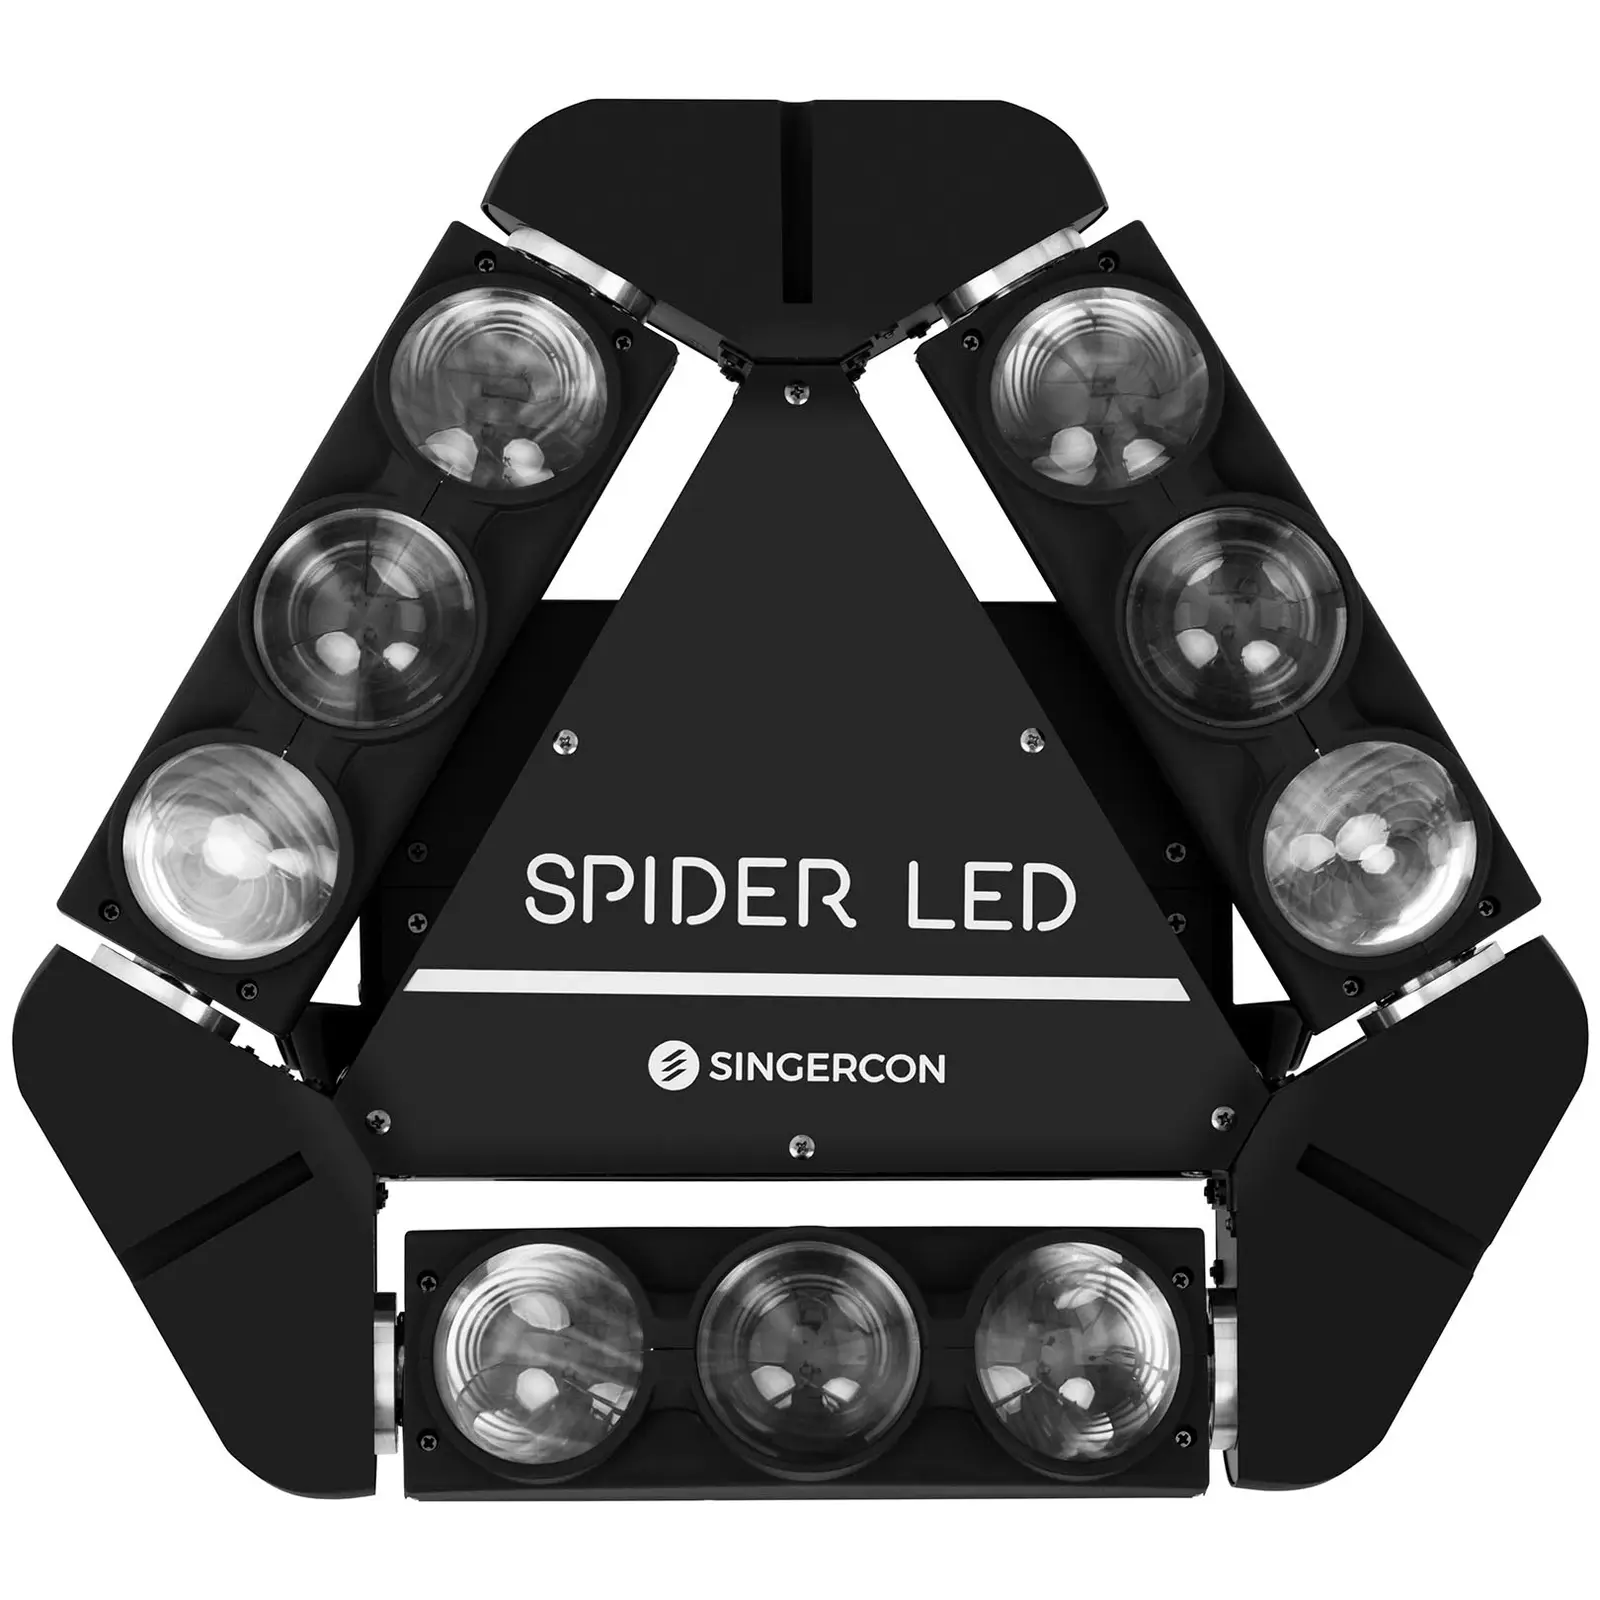 Ruchoma głowa - spider LED